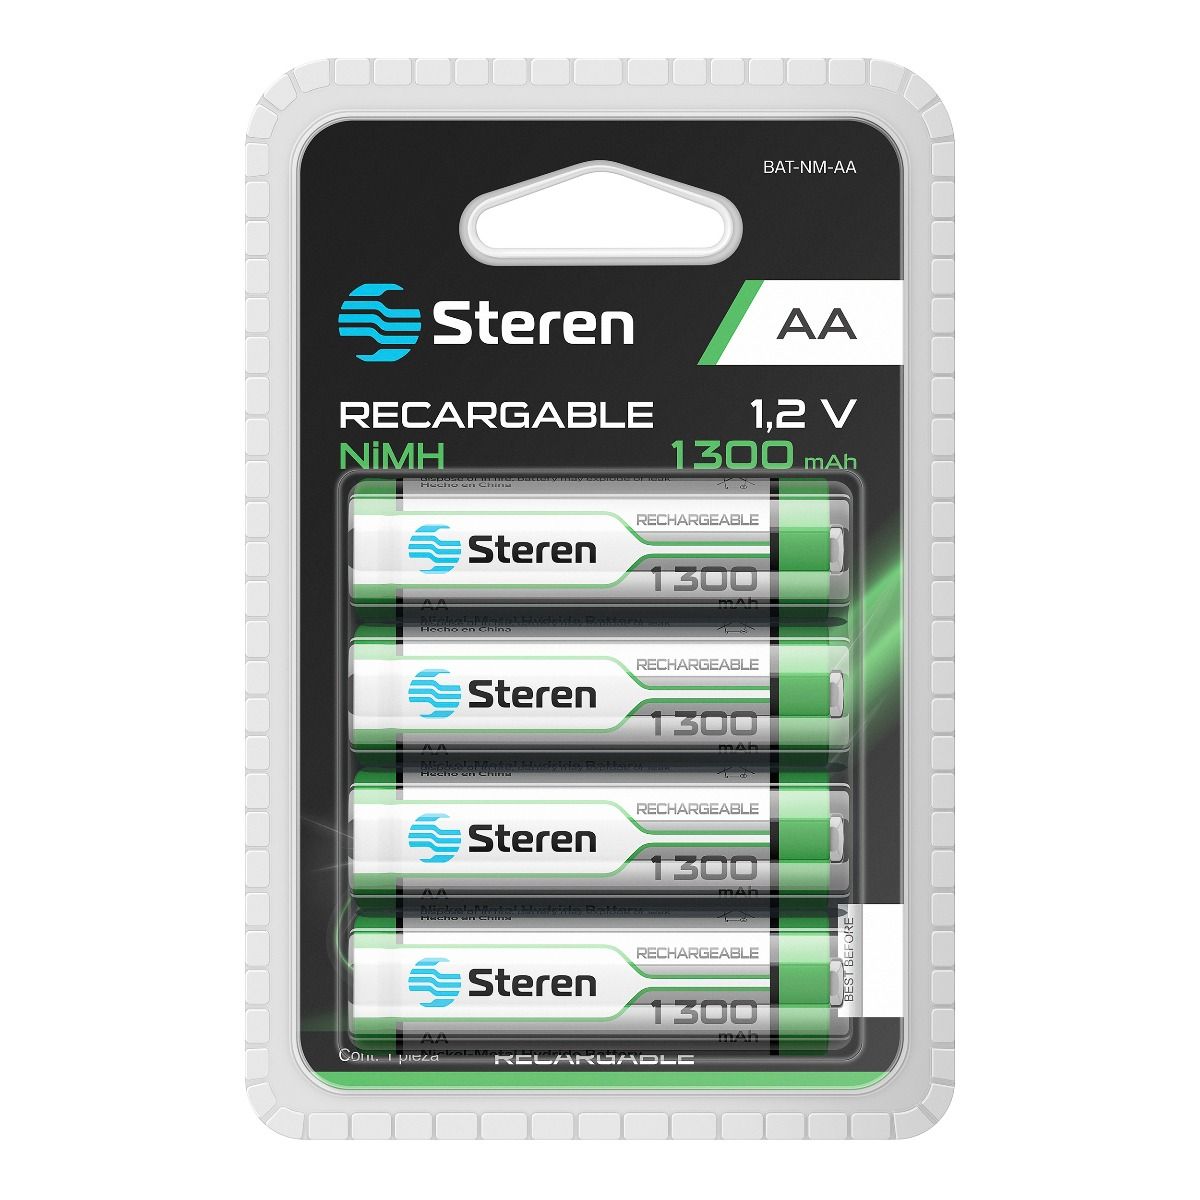 Batteries4pro - Tamaños y formatos de pilas y baterías